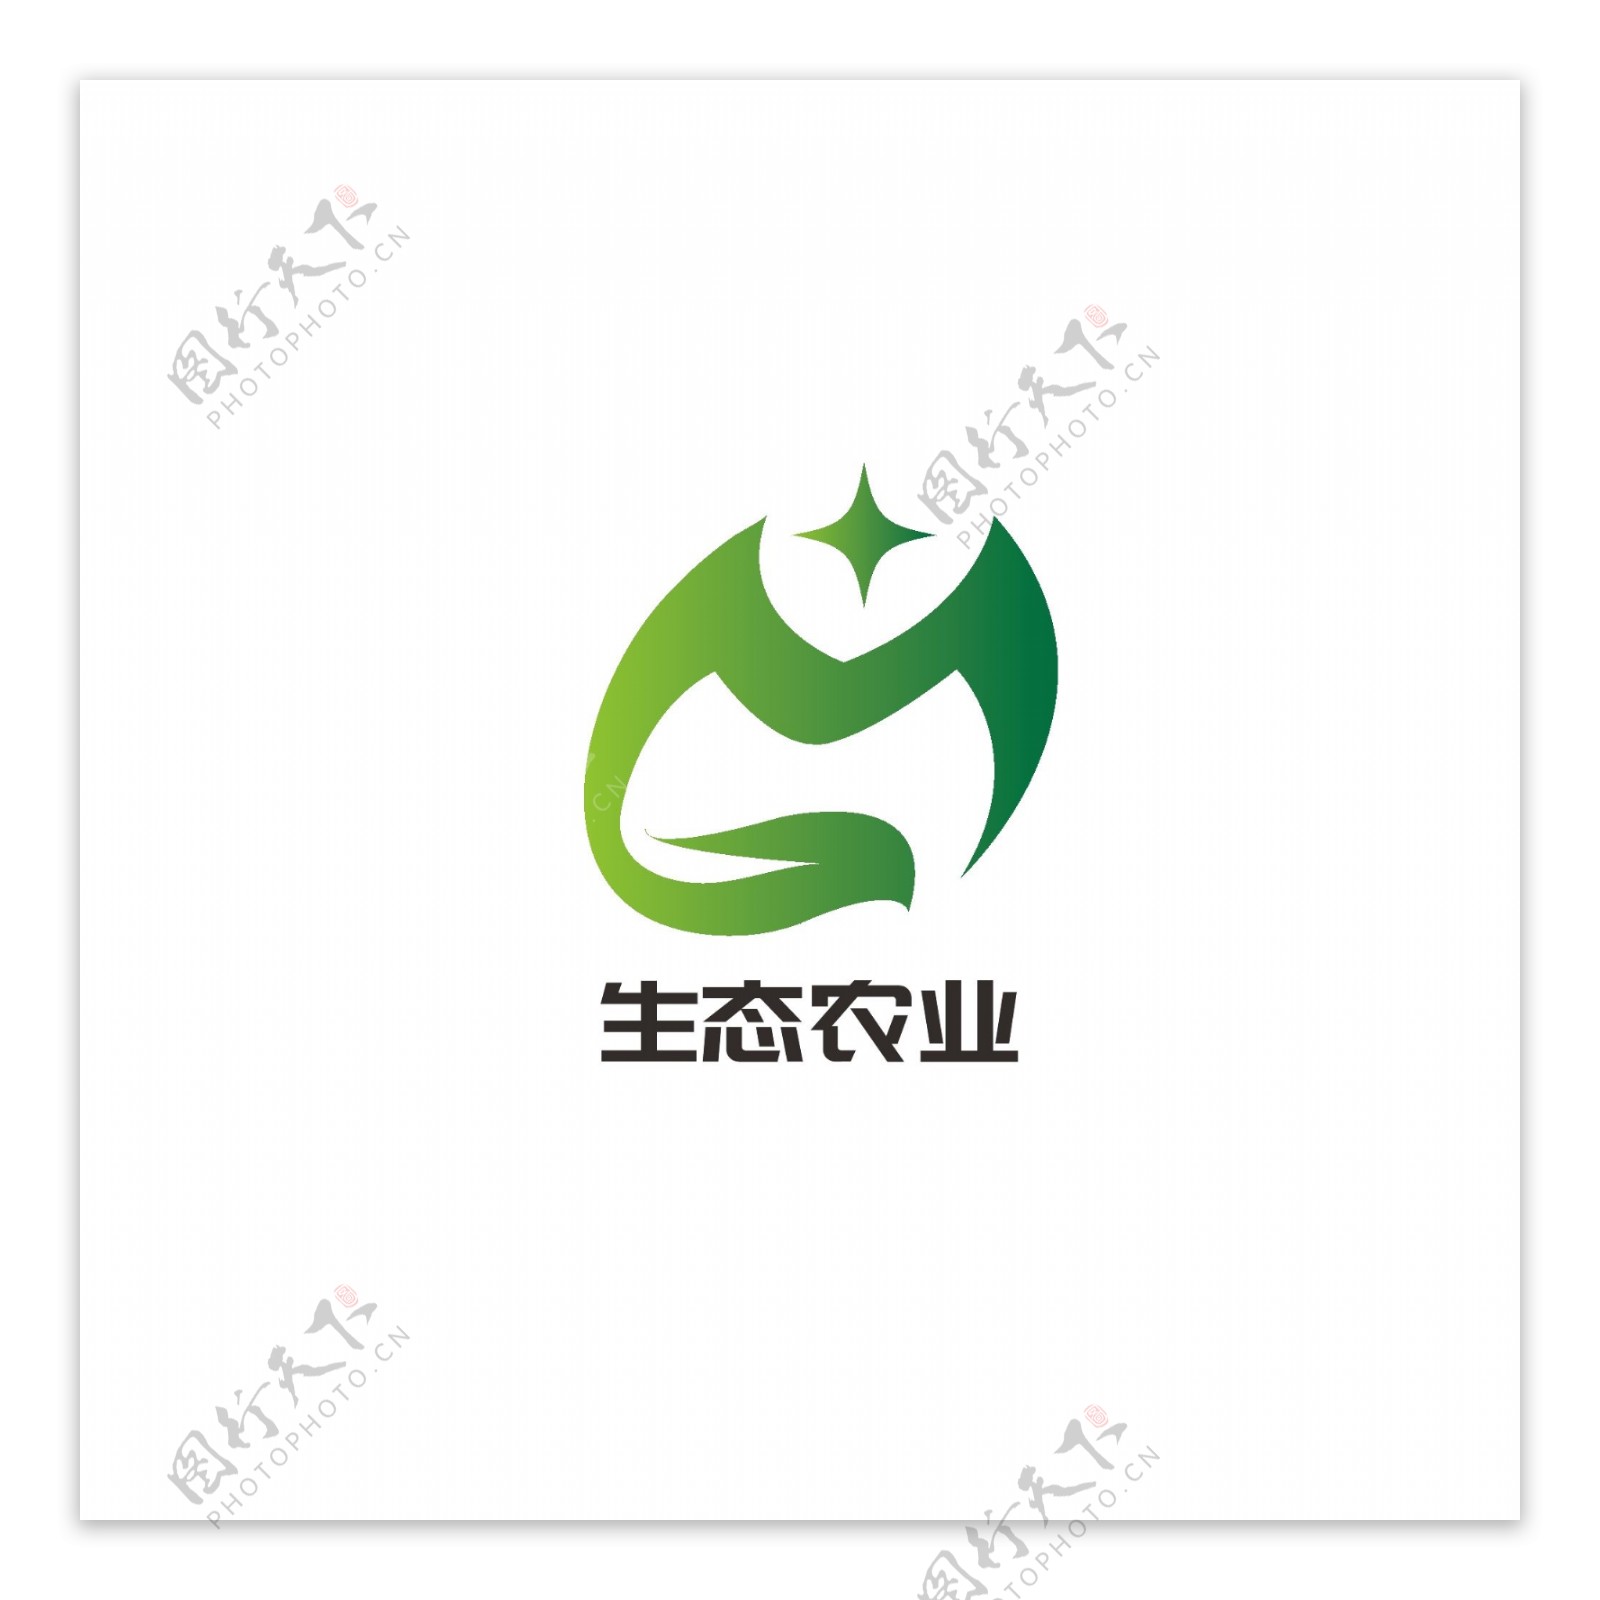 生态农业logo设计